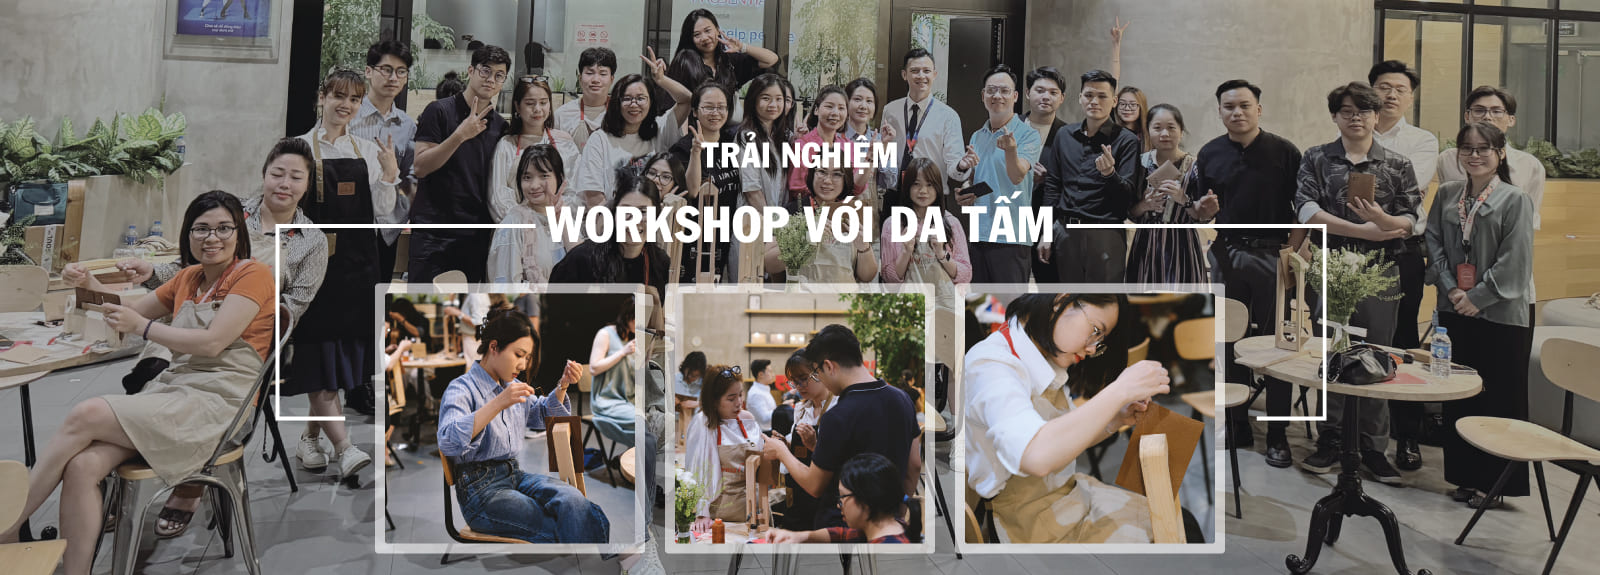 Trải nghiệm Workshop về đồ da thật cùng da tấm tại Hà Nội